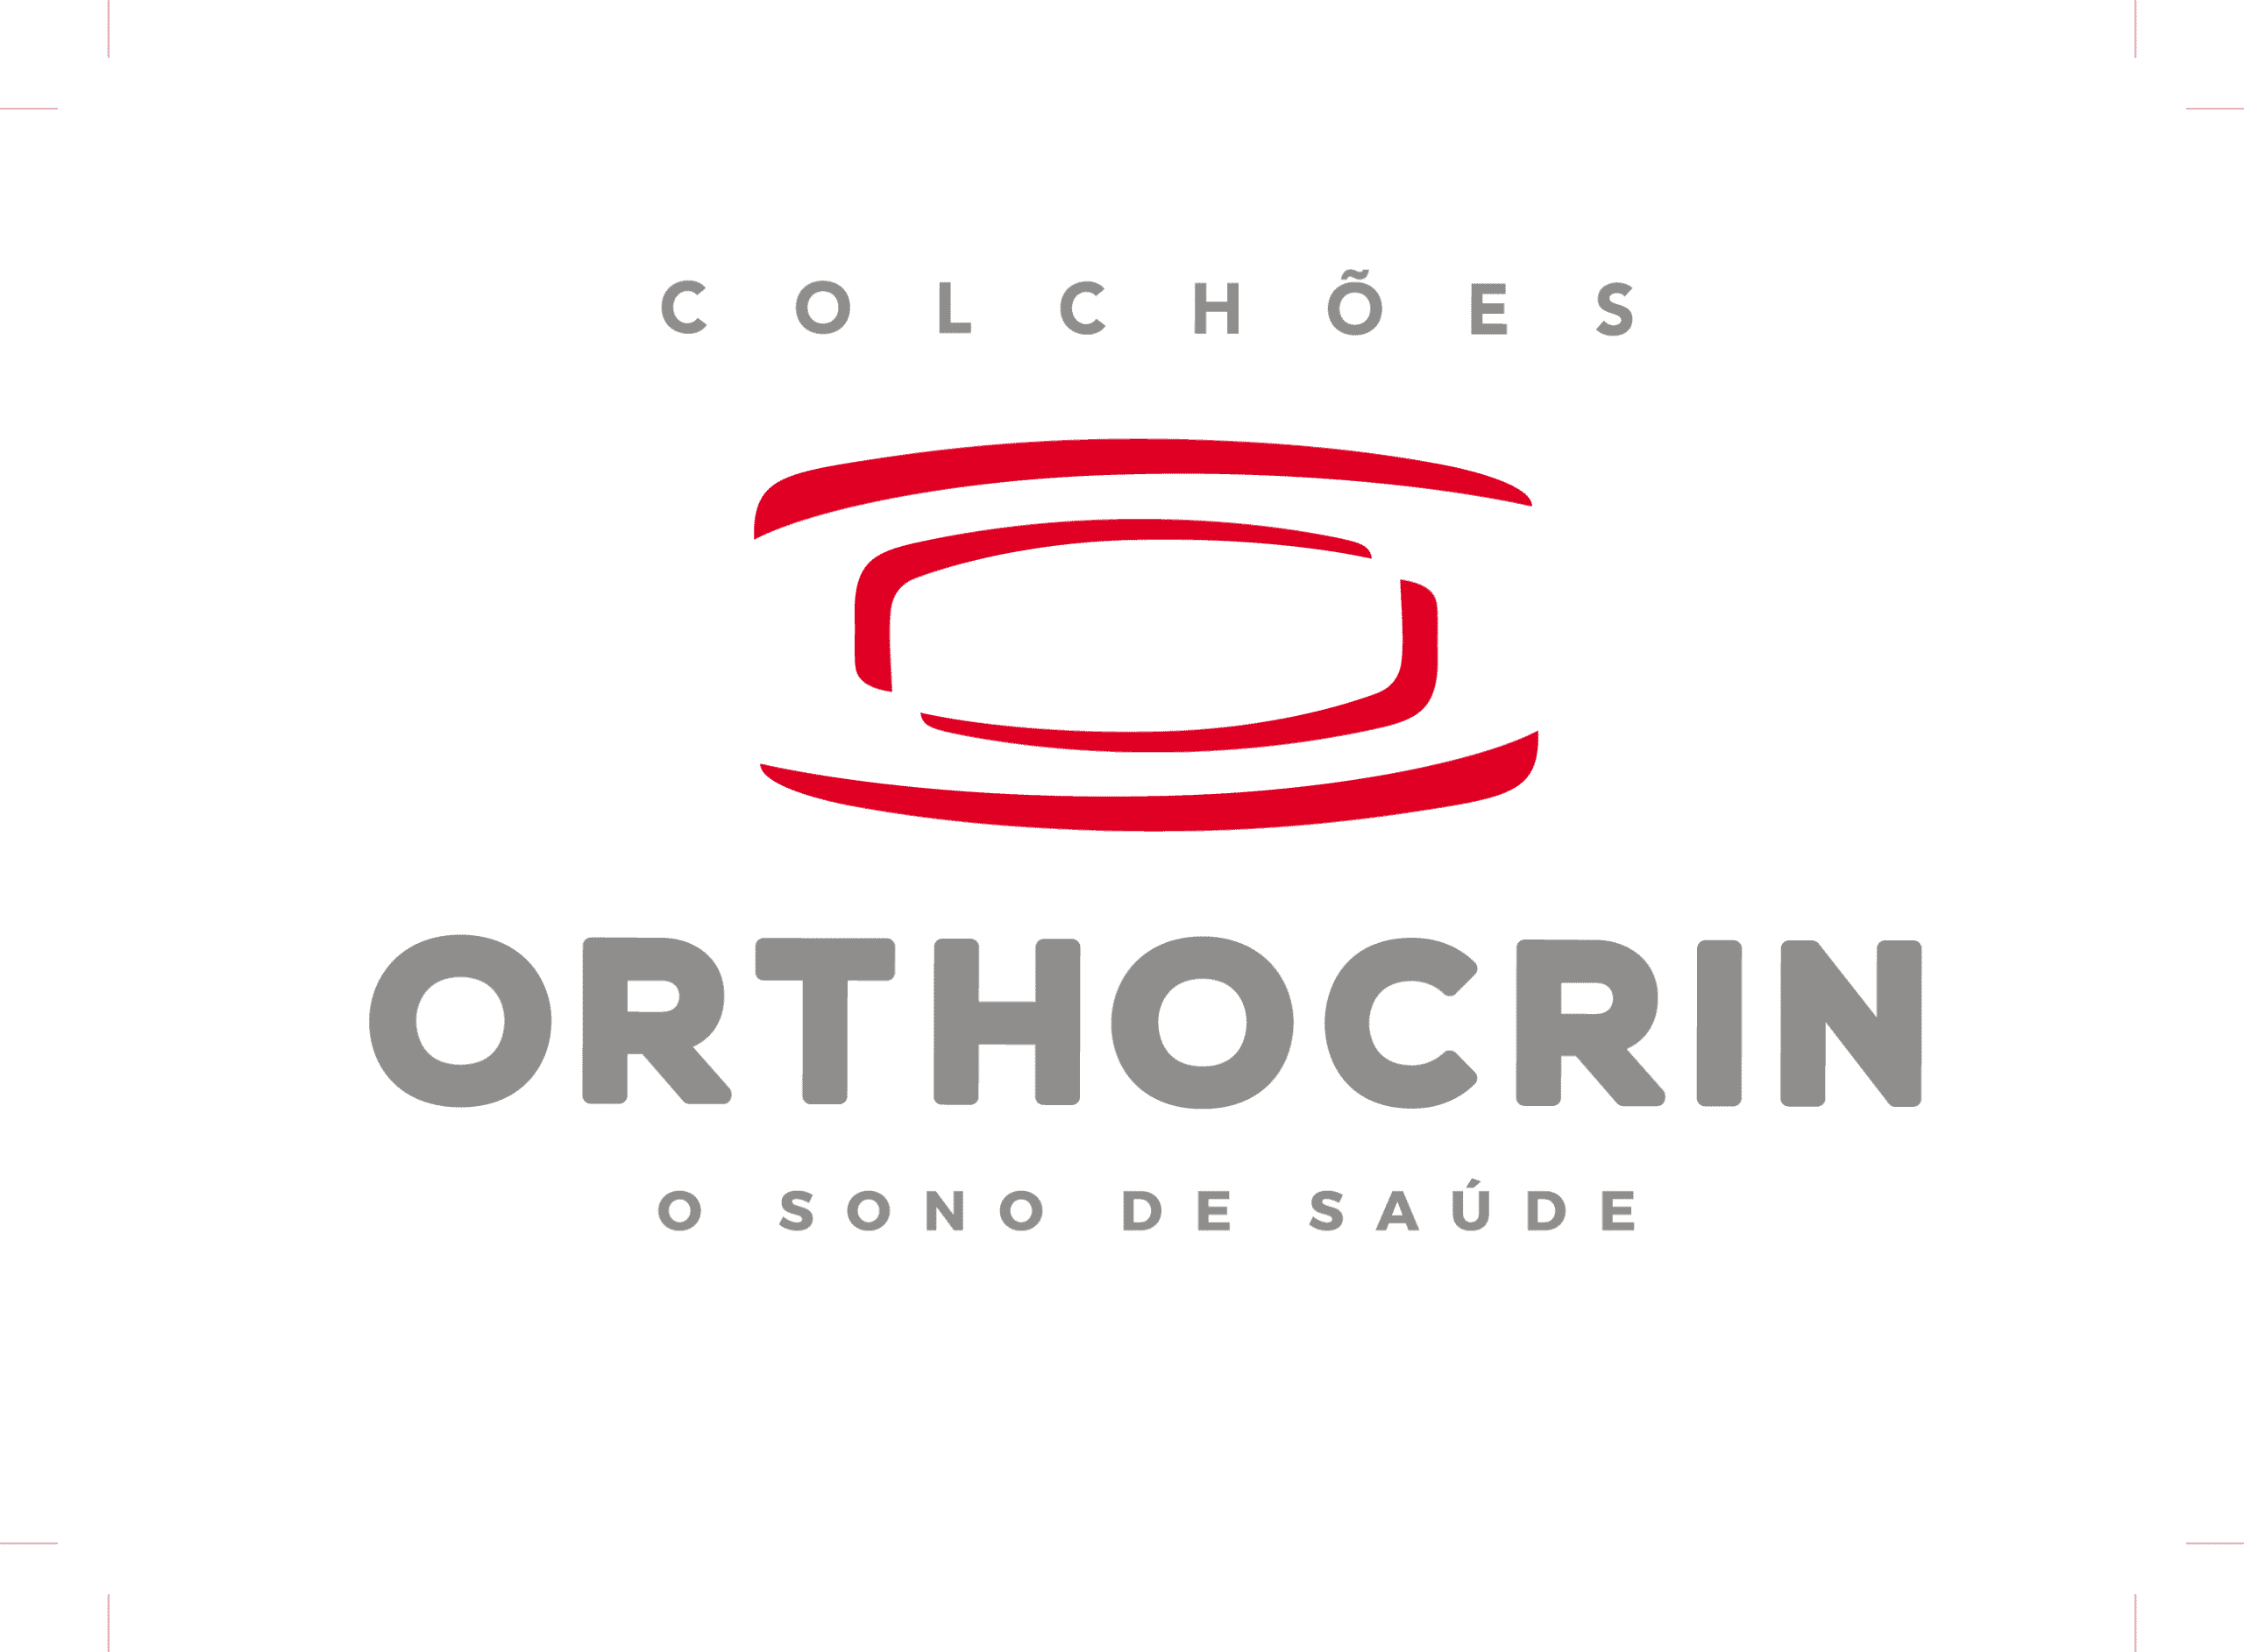 Colchão Orthocrin é bom? Vale a pena comprar? 